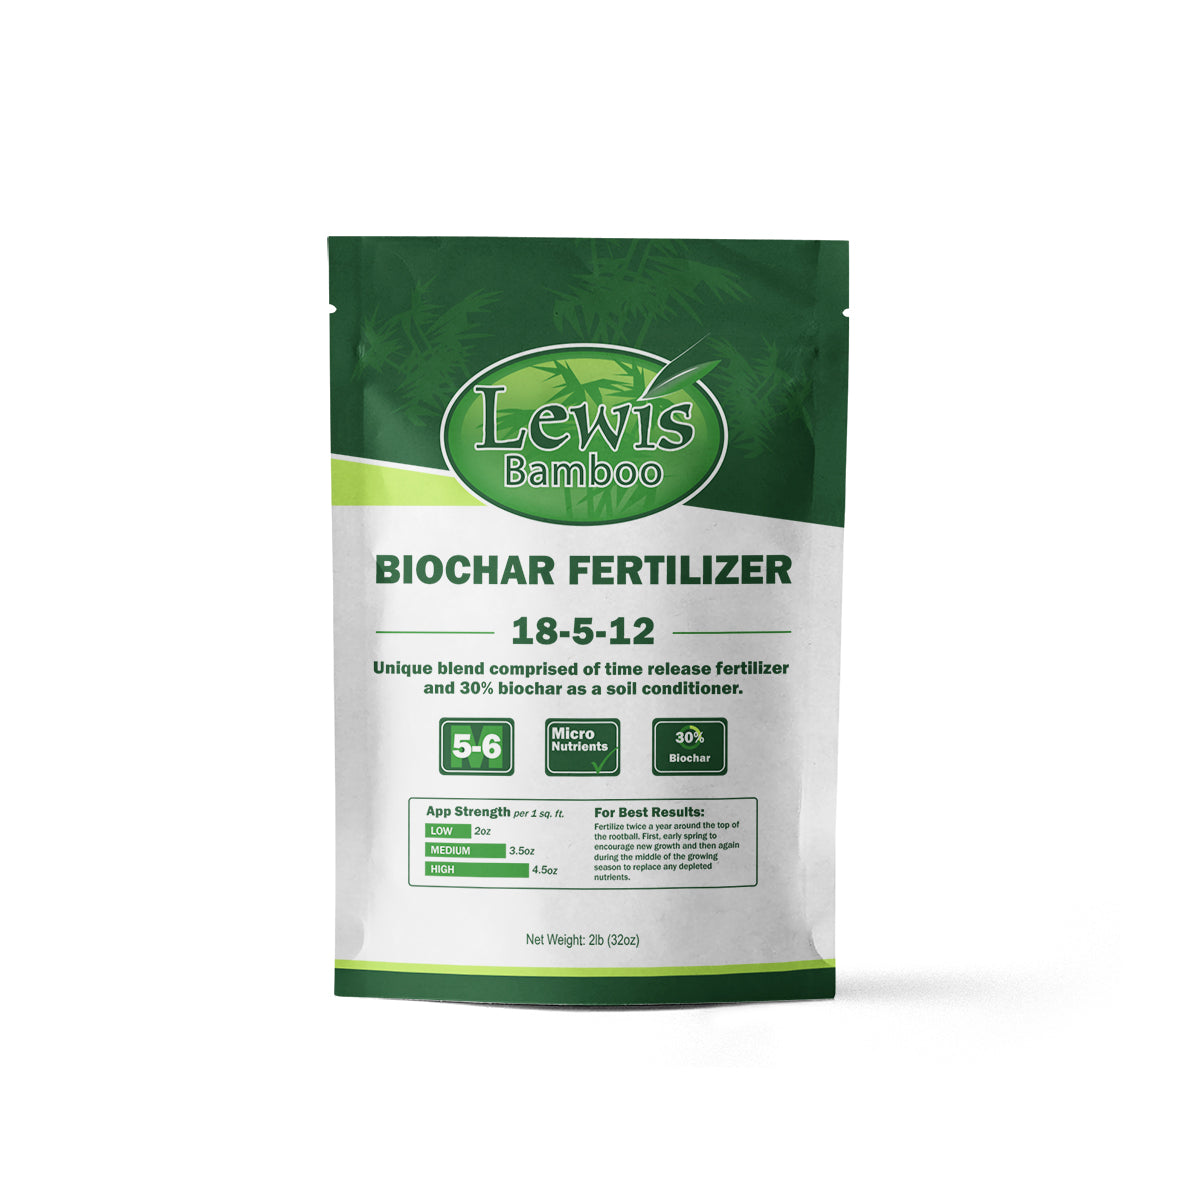 Biochar Fertilizer 18-5-12